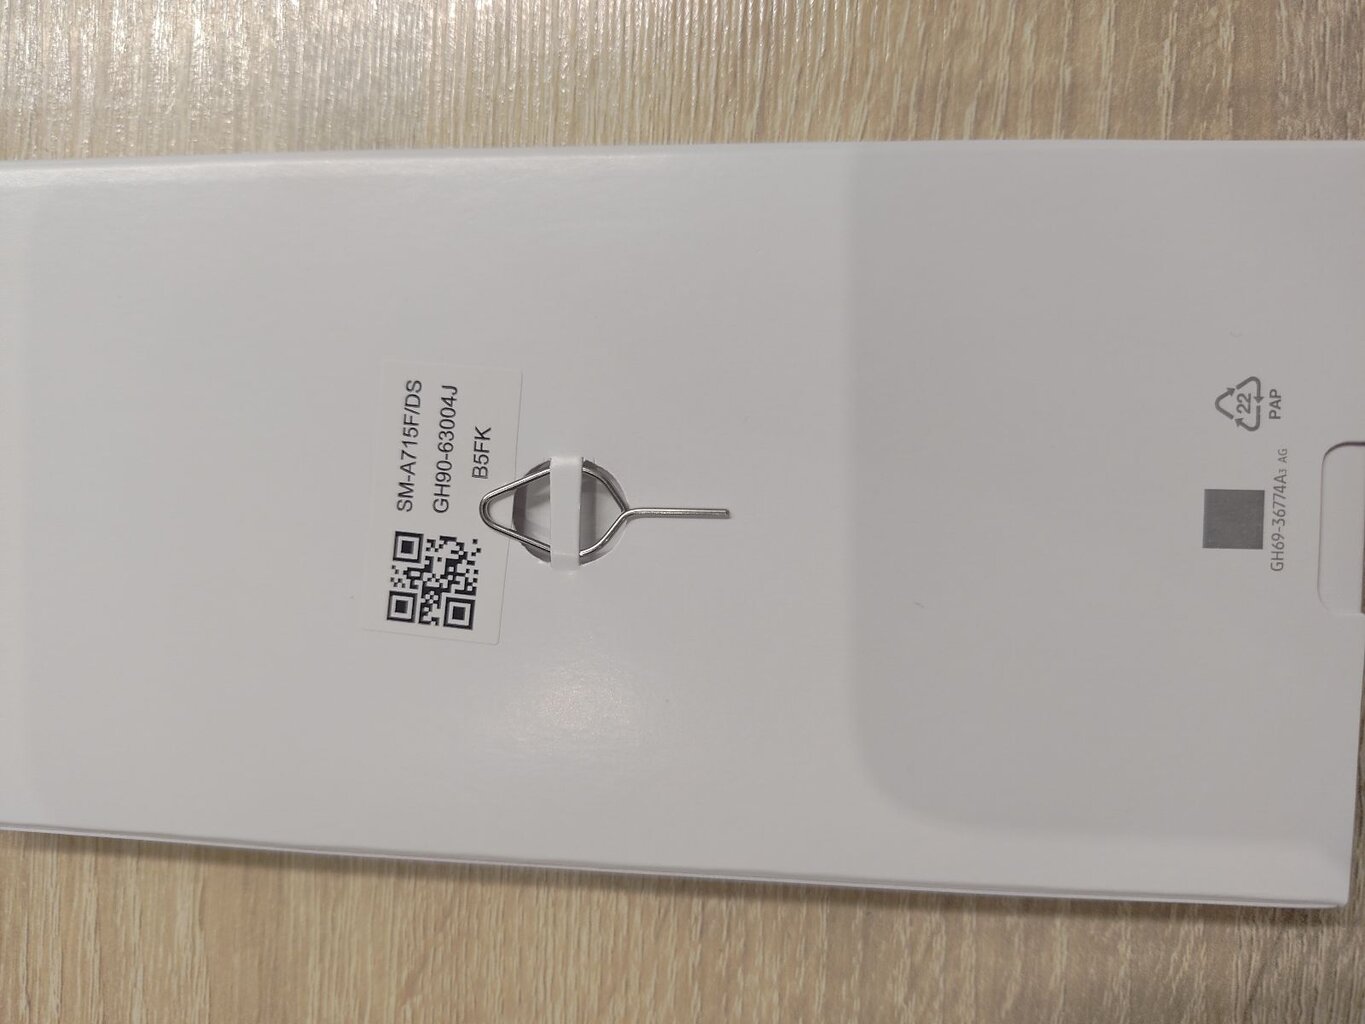 Prekė su pažeidimu. Samsung Galaxy A71 128GB, Dual SIM, Silver kaina ir informacija | Prekės su pažeidimu | pigu.lt